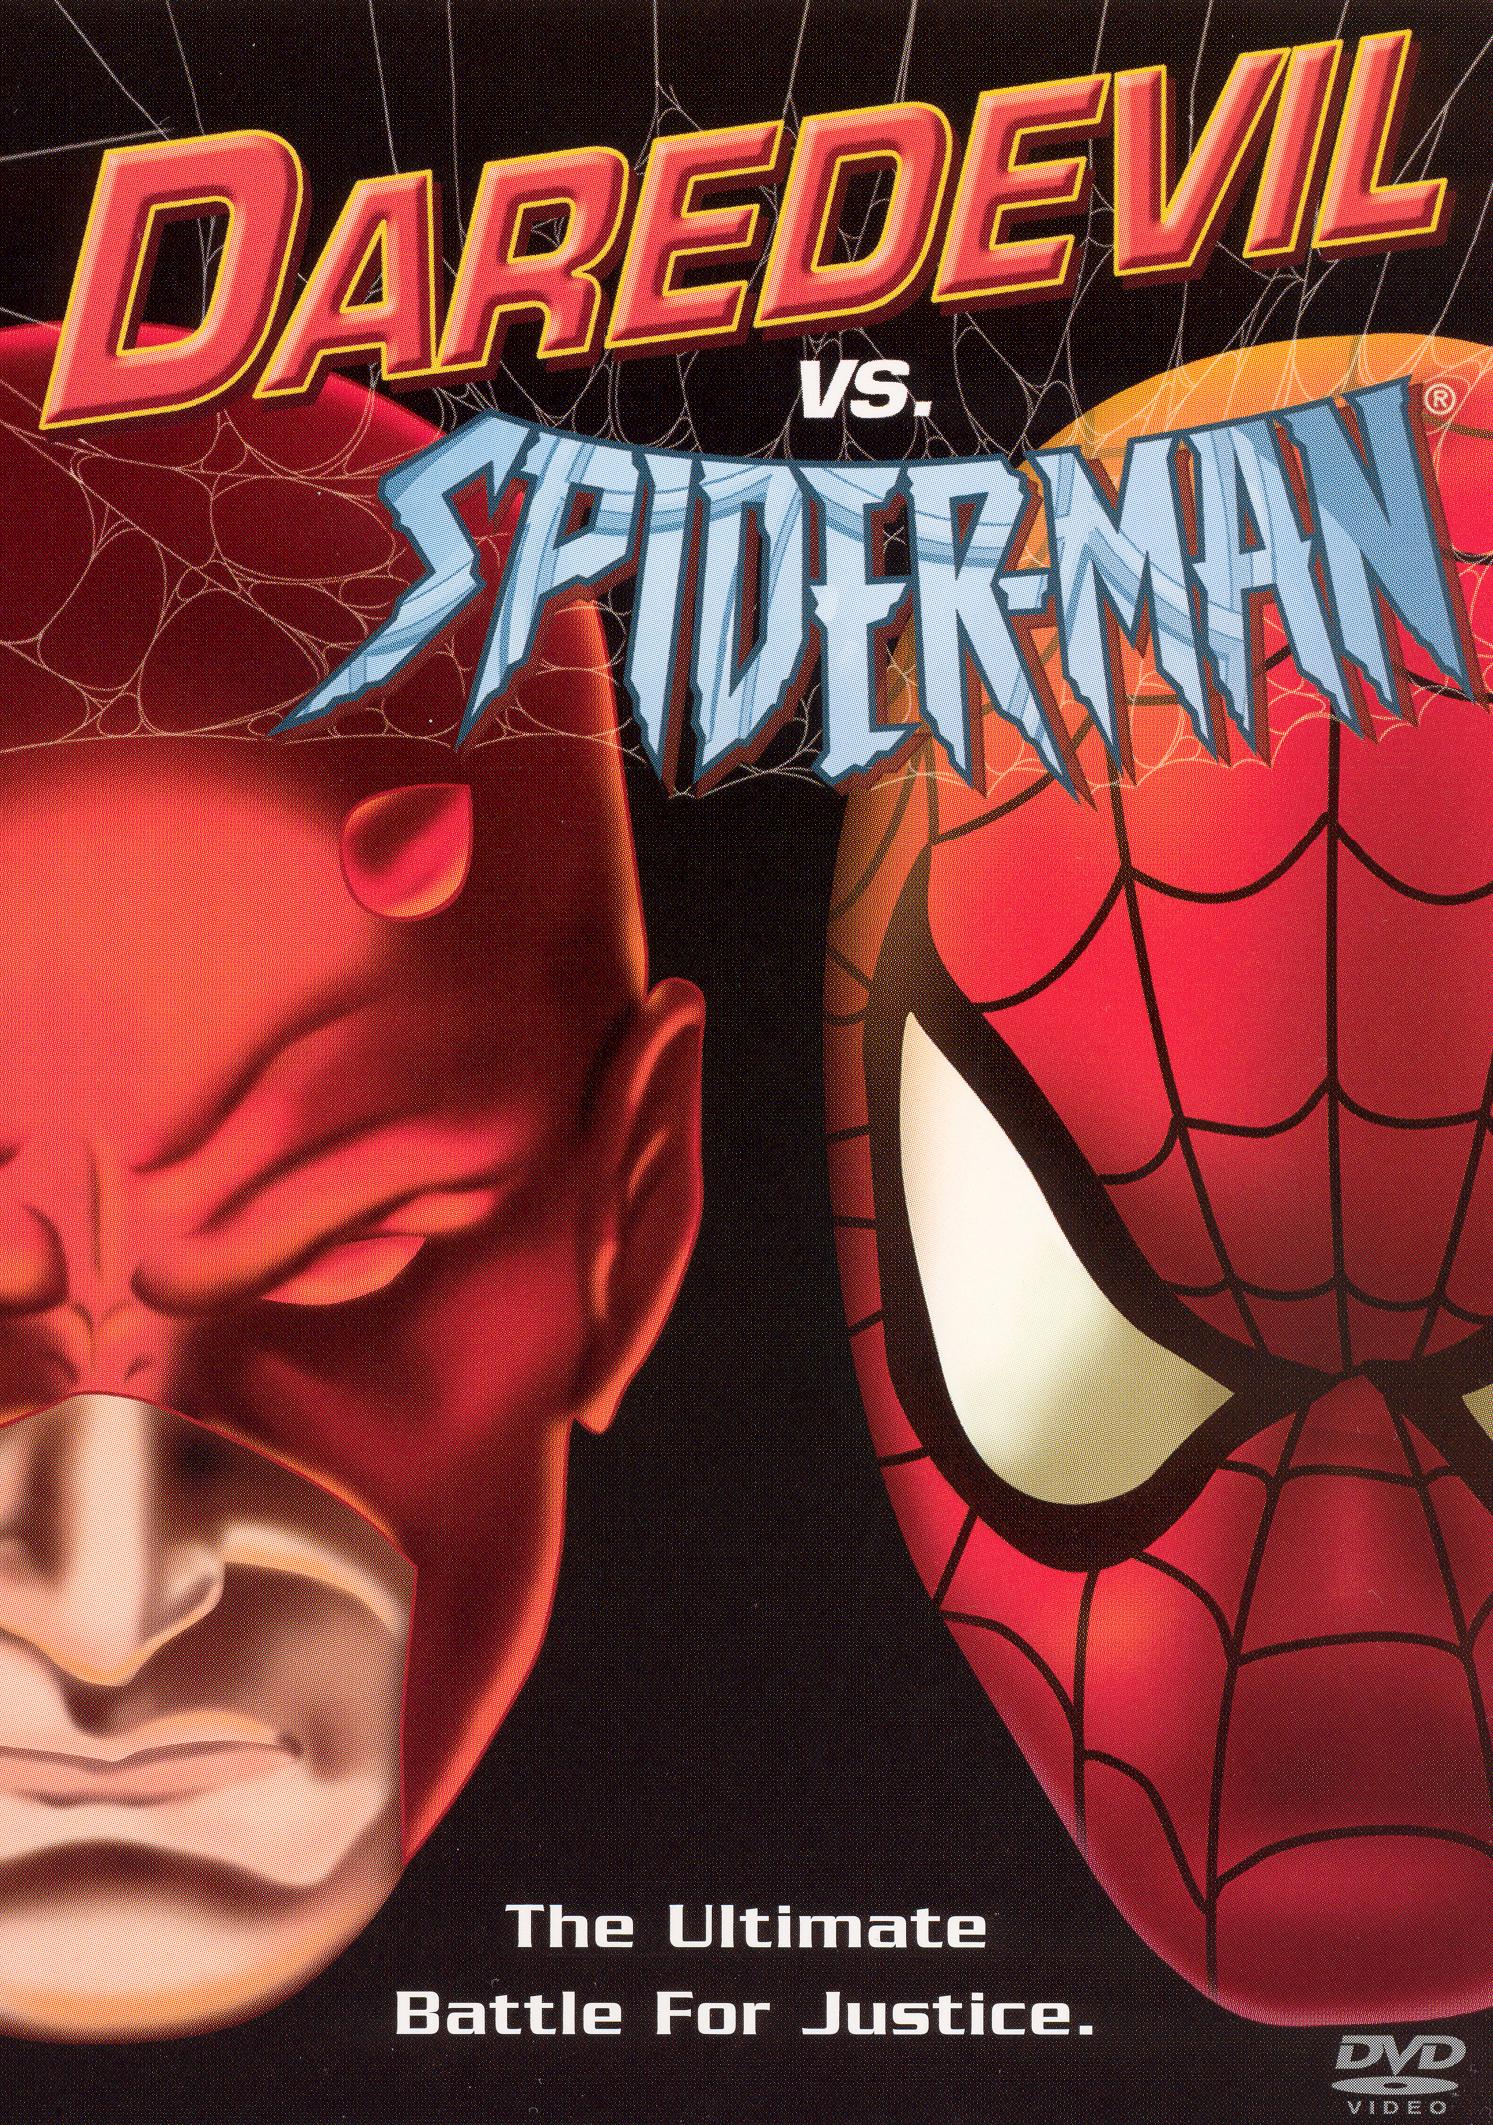 Daredevil vs. Spider-Man [DVD] [2003] - Best Buy